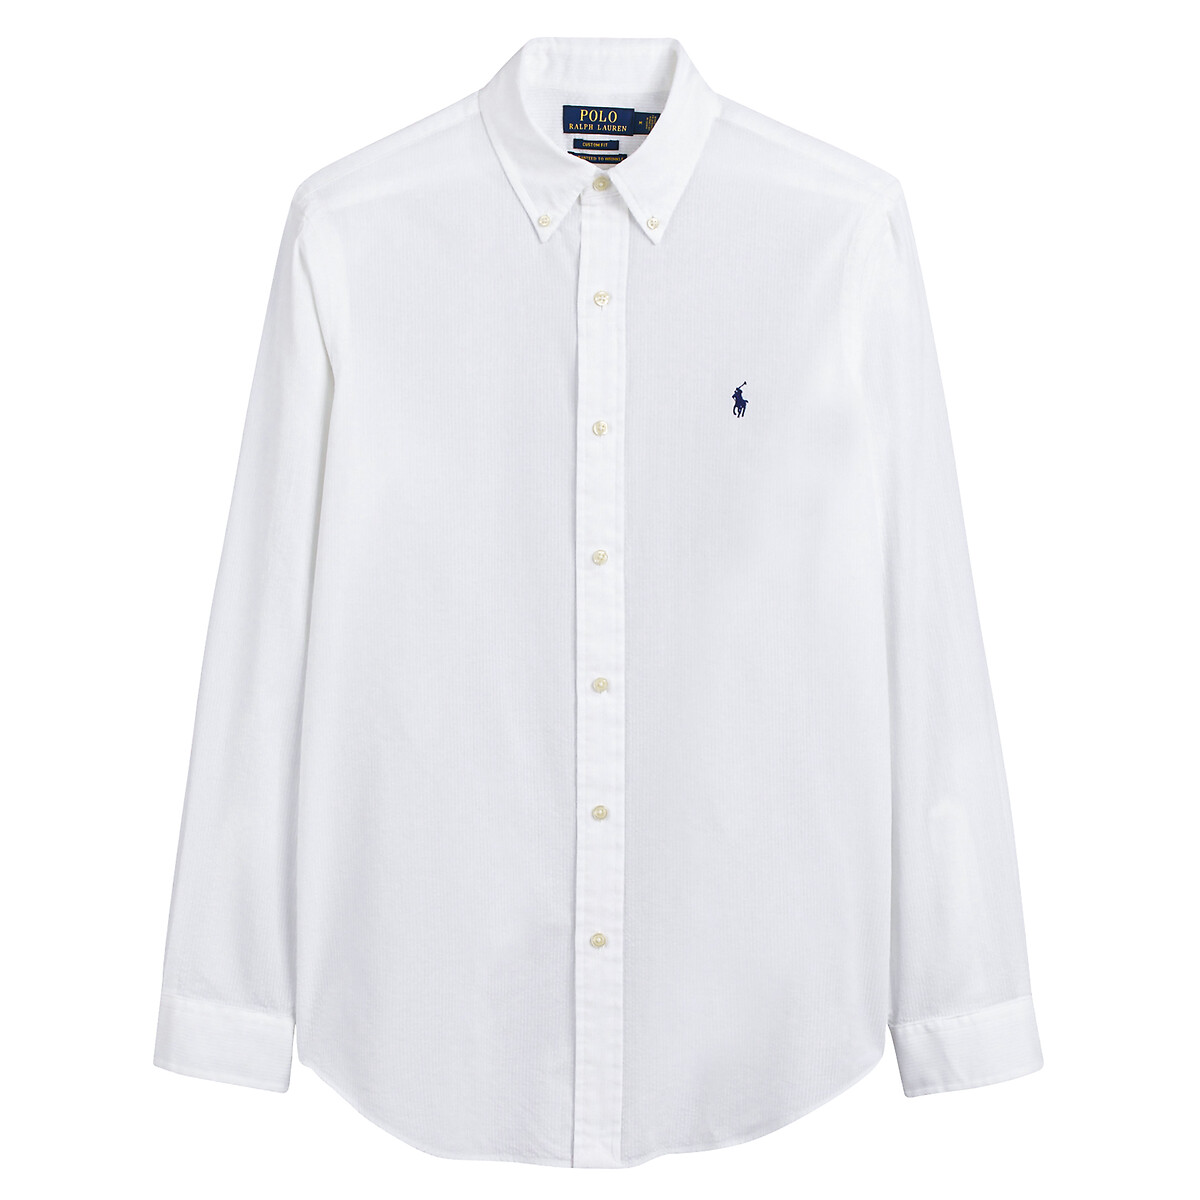 Рубашка узкая из легкой полосатой ткани  M белый LaRedoute, размер M